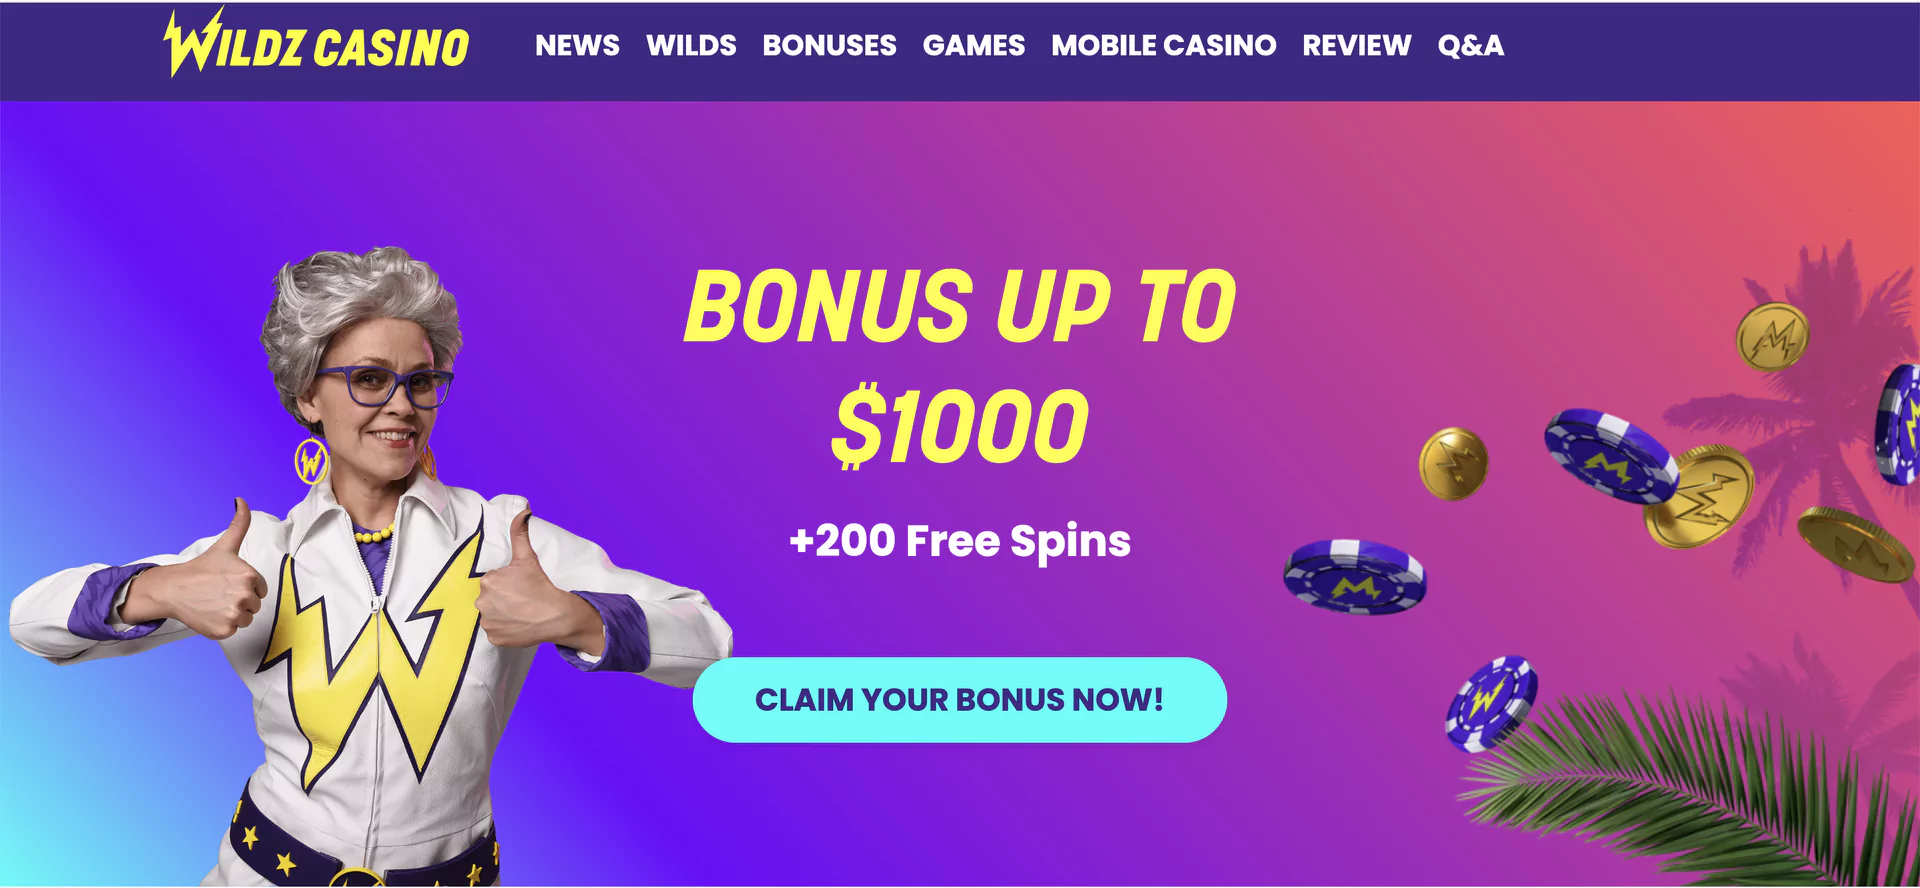 Bonuses at Wildz Casino